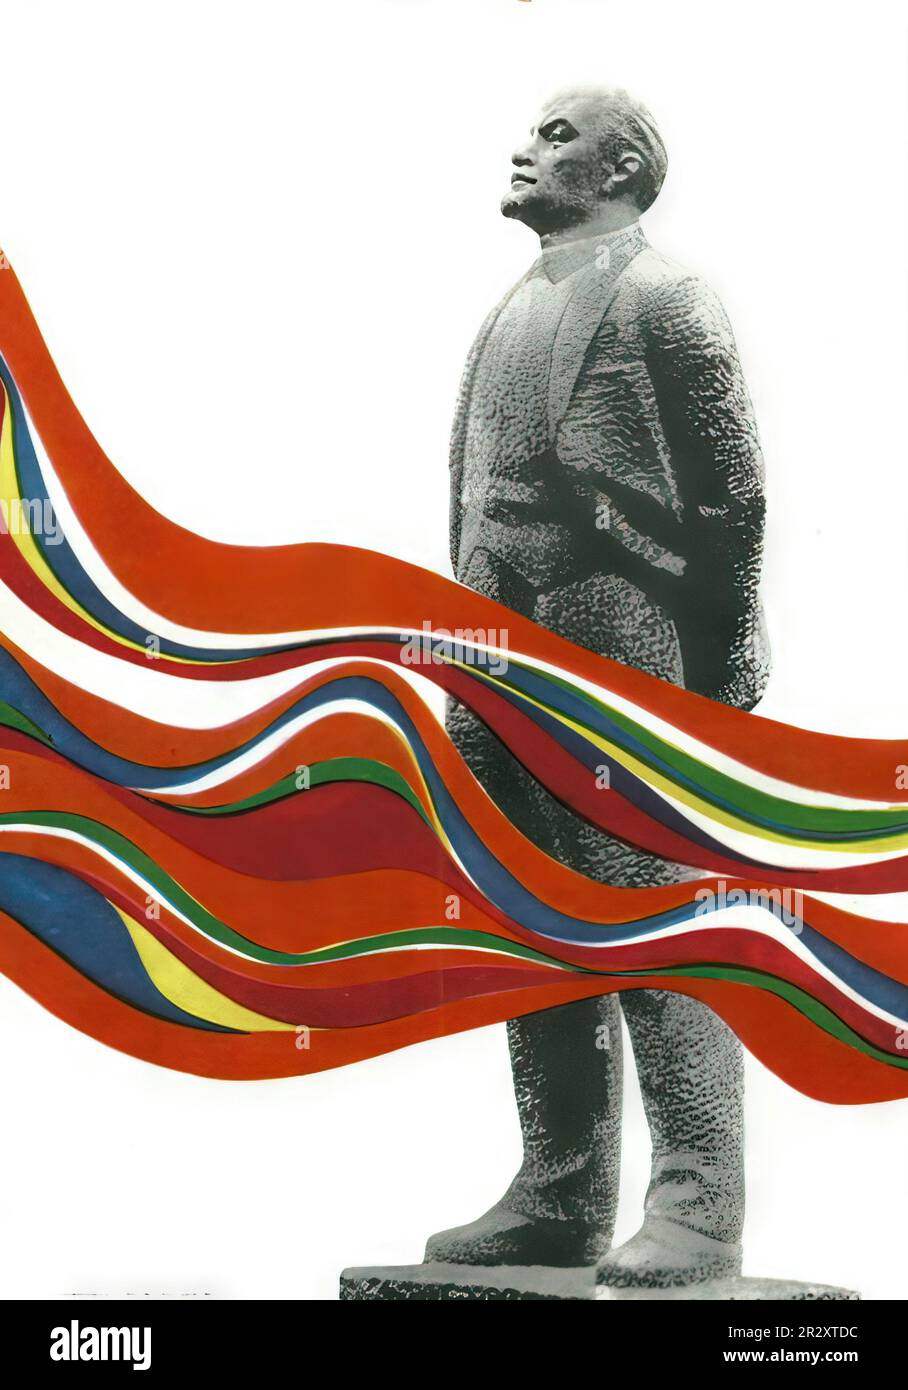 Propagandaposter, die Lenin darstellen, der die Sowjetunion gründete, einen sozialistischen Einparteienstaat, der von der ideologisch marxistischen Kommunistischen Partei regiert wird Stockfoto